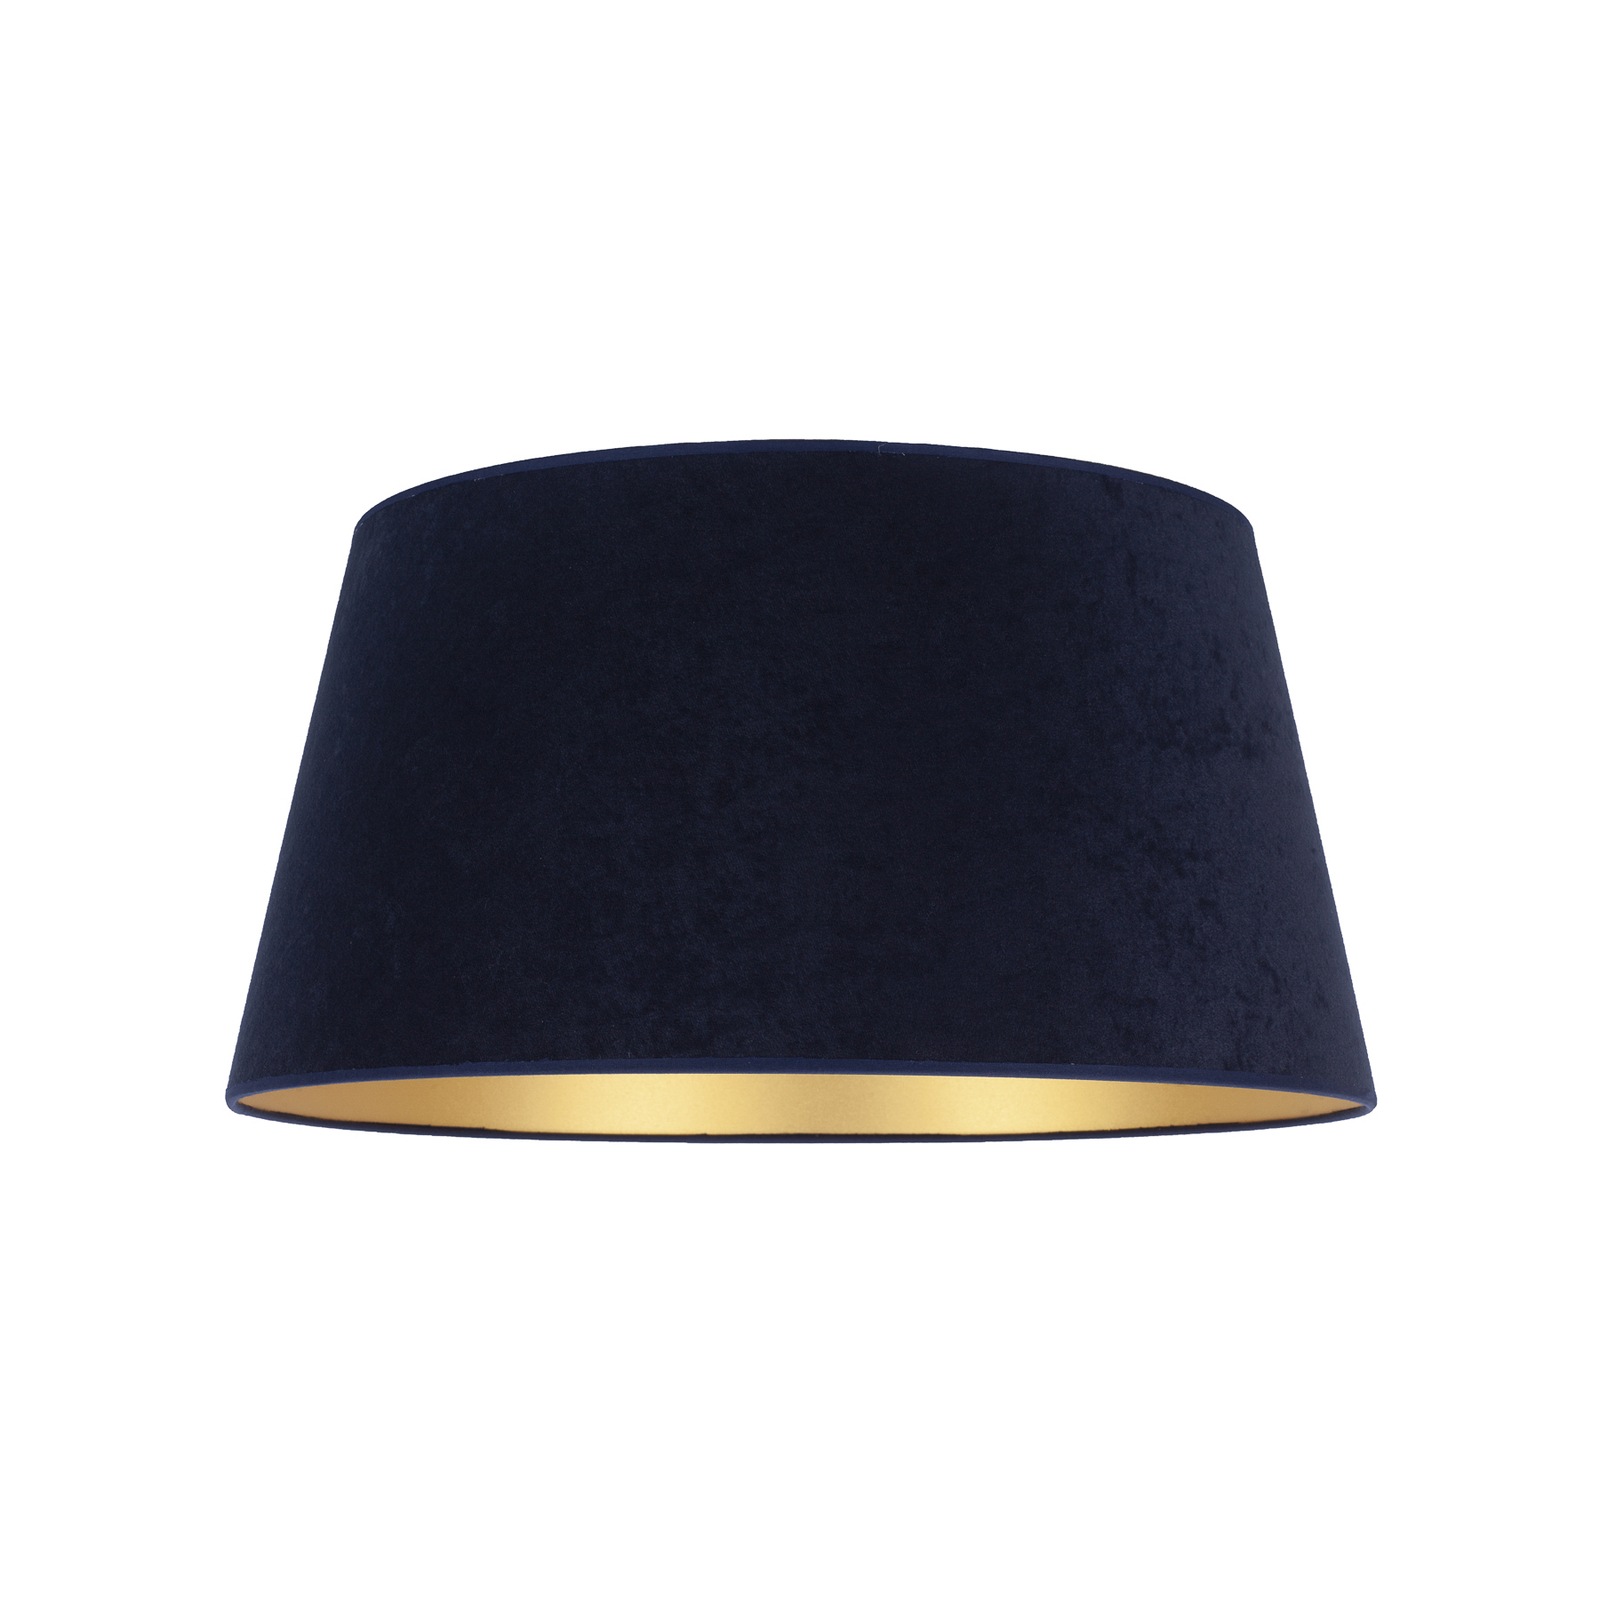 Cone lámpaernyő 25,5 cm magas, sötétkék/arany